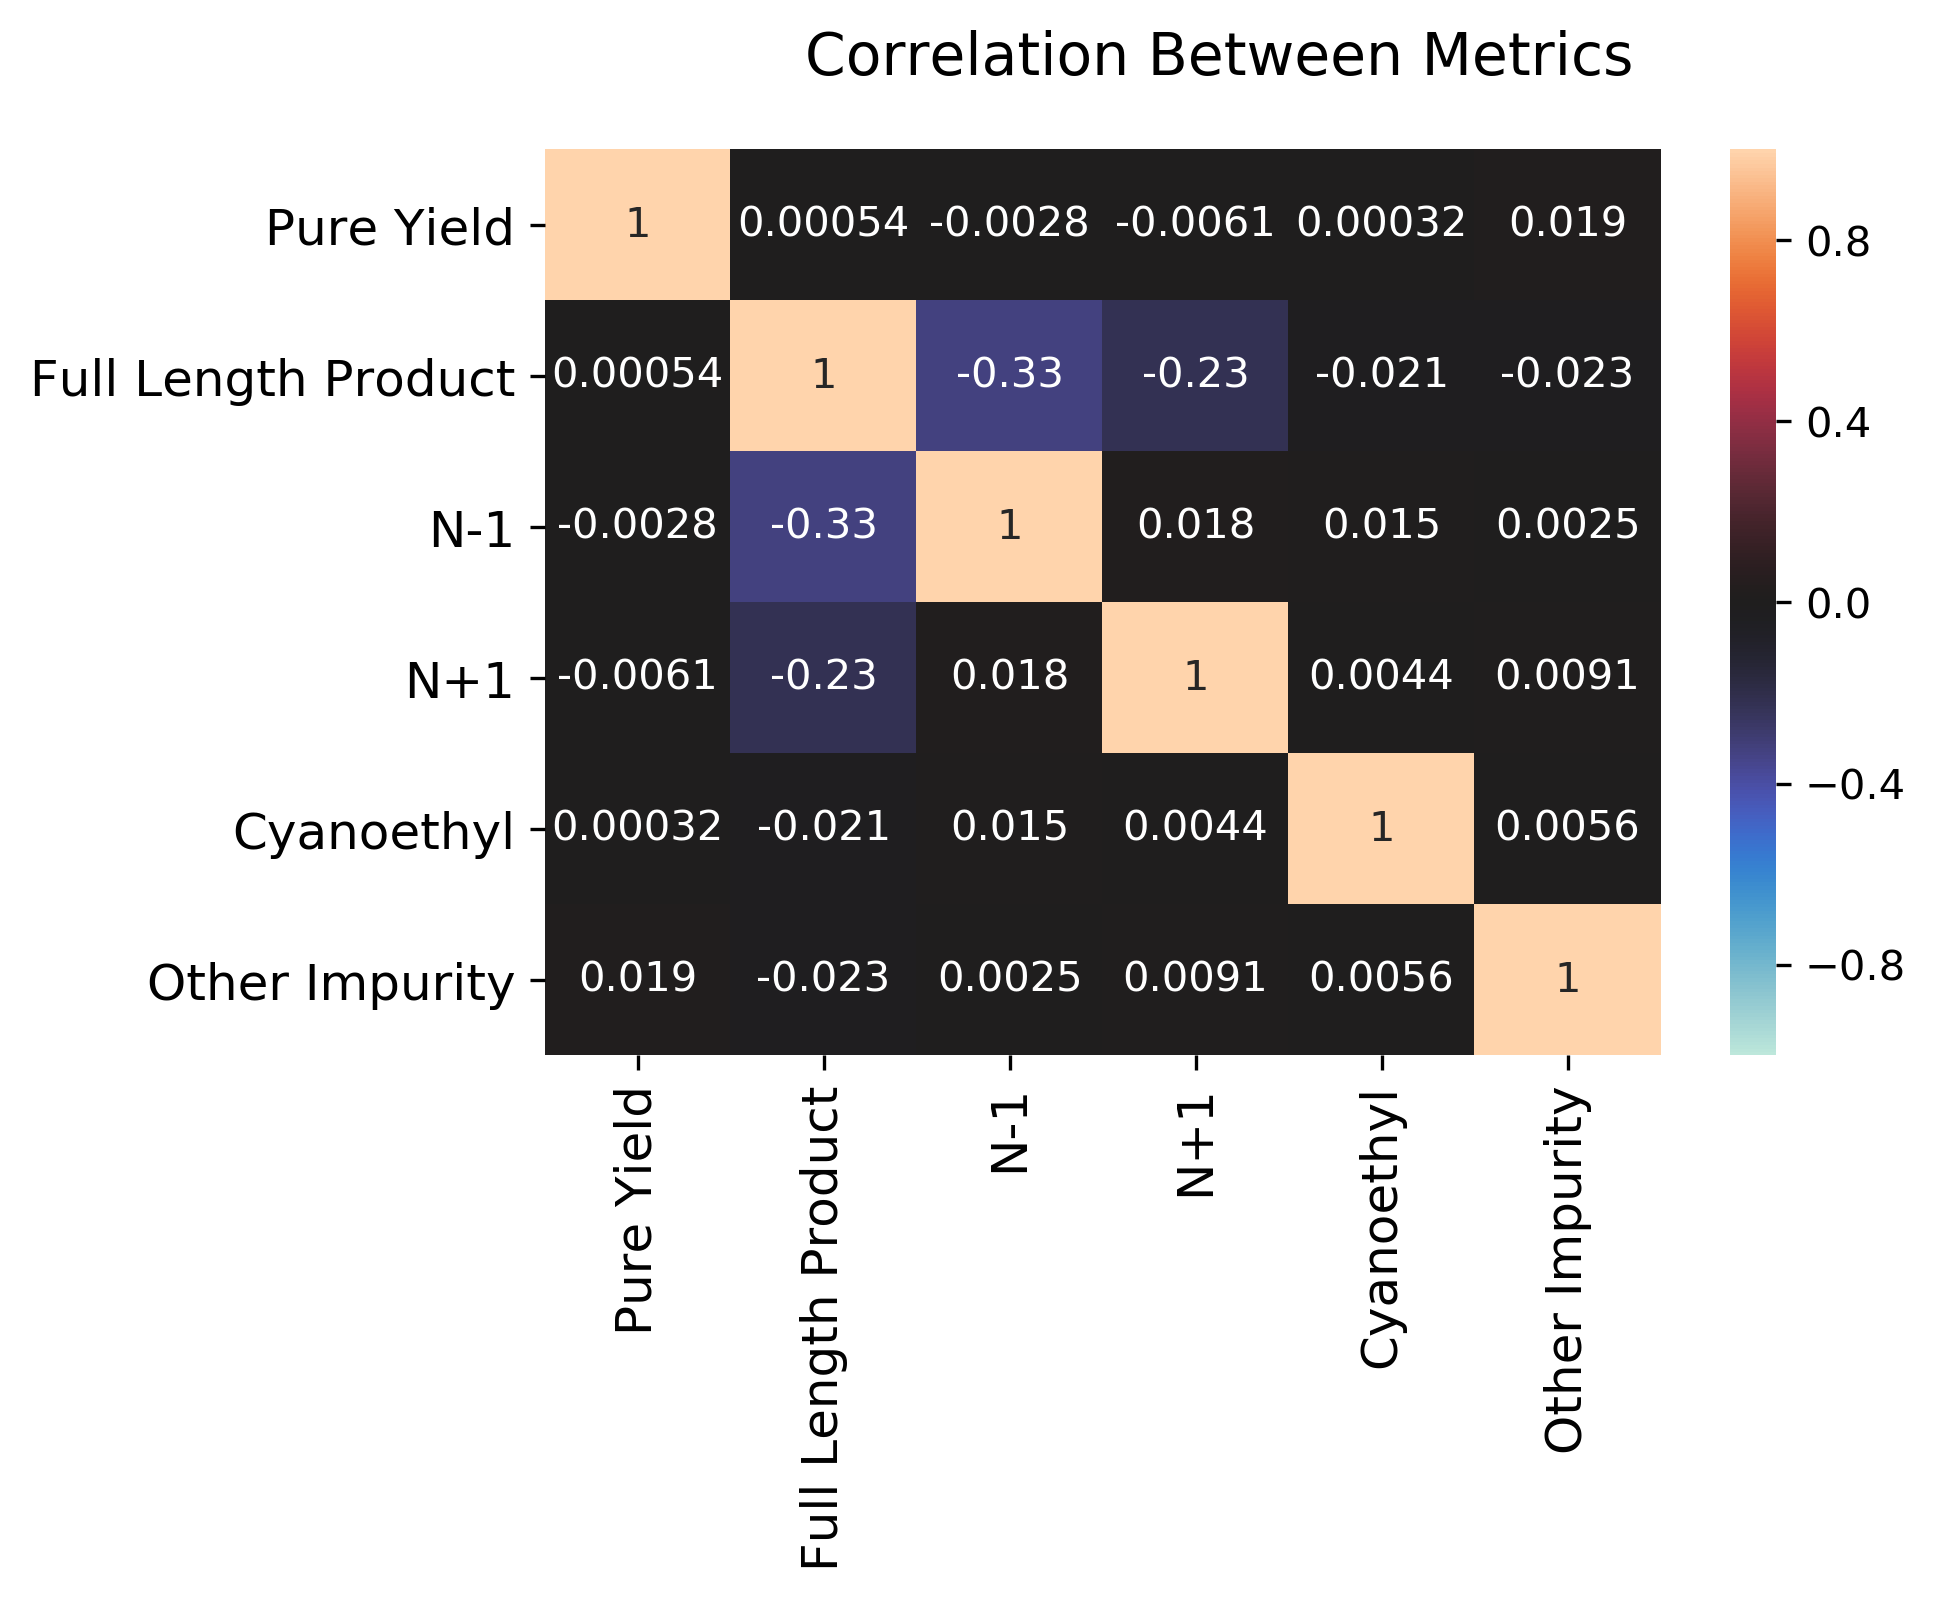 Heatmap of correlations between metrics